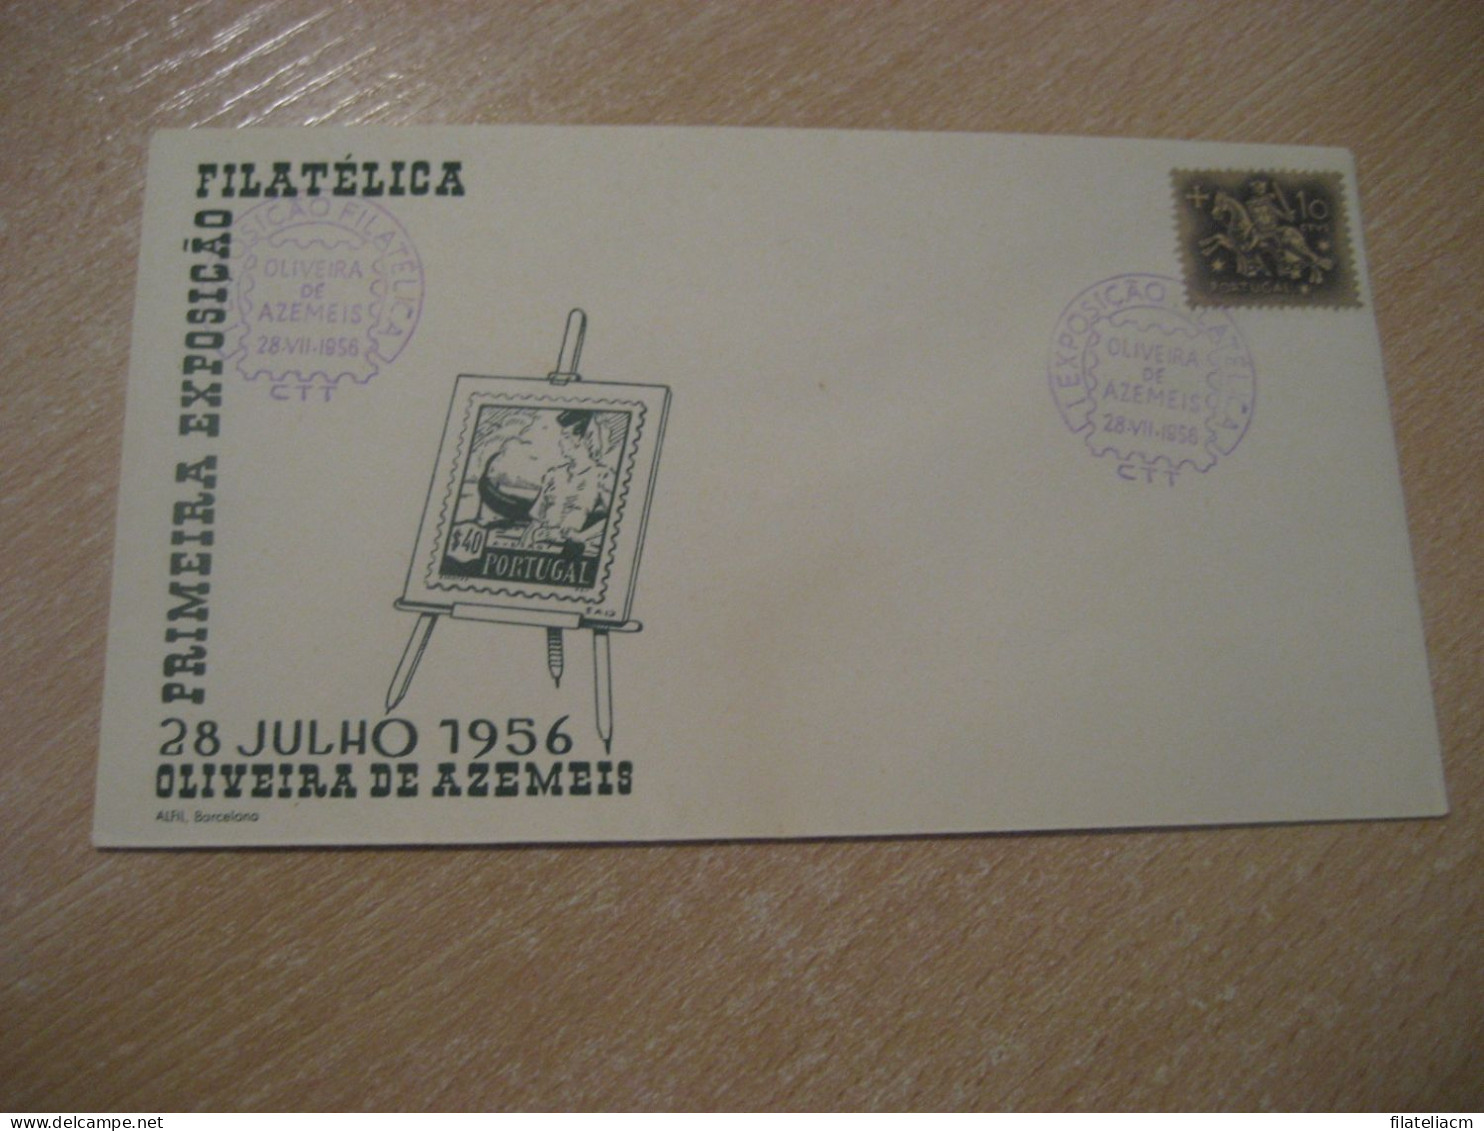 OLIVEIRA DE AZEMEIS 1956 Expo Filatelica Cancel Cover PORTUGAL - Brieven En Documenten